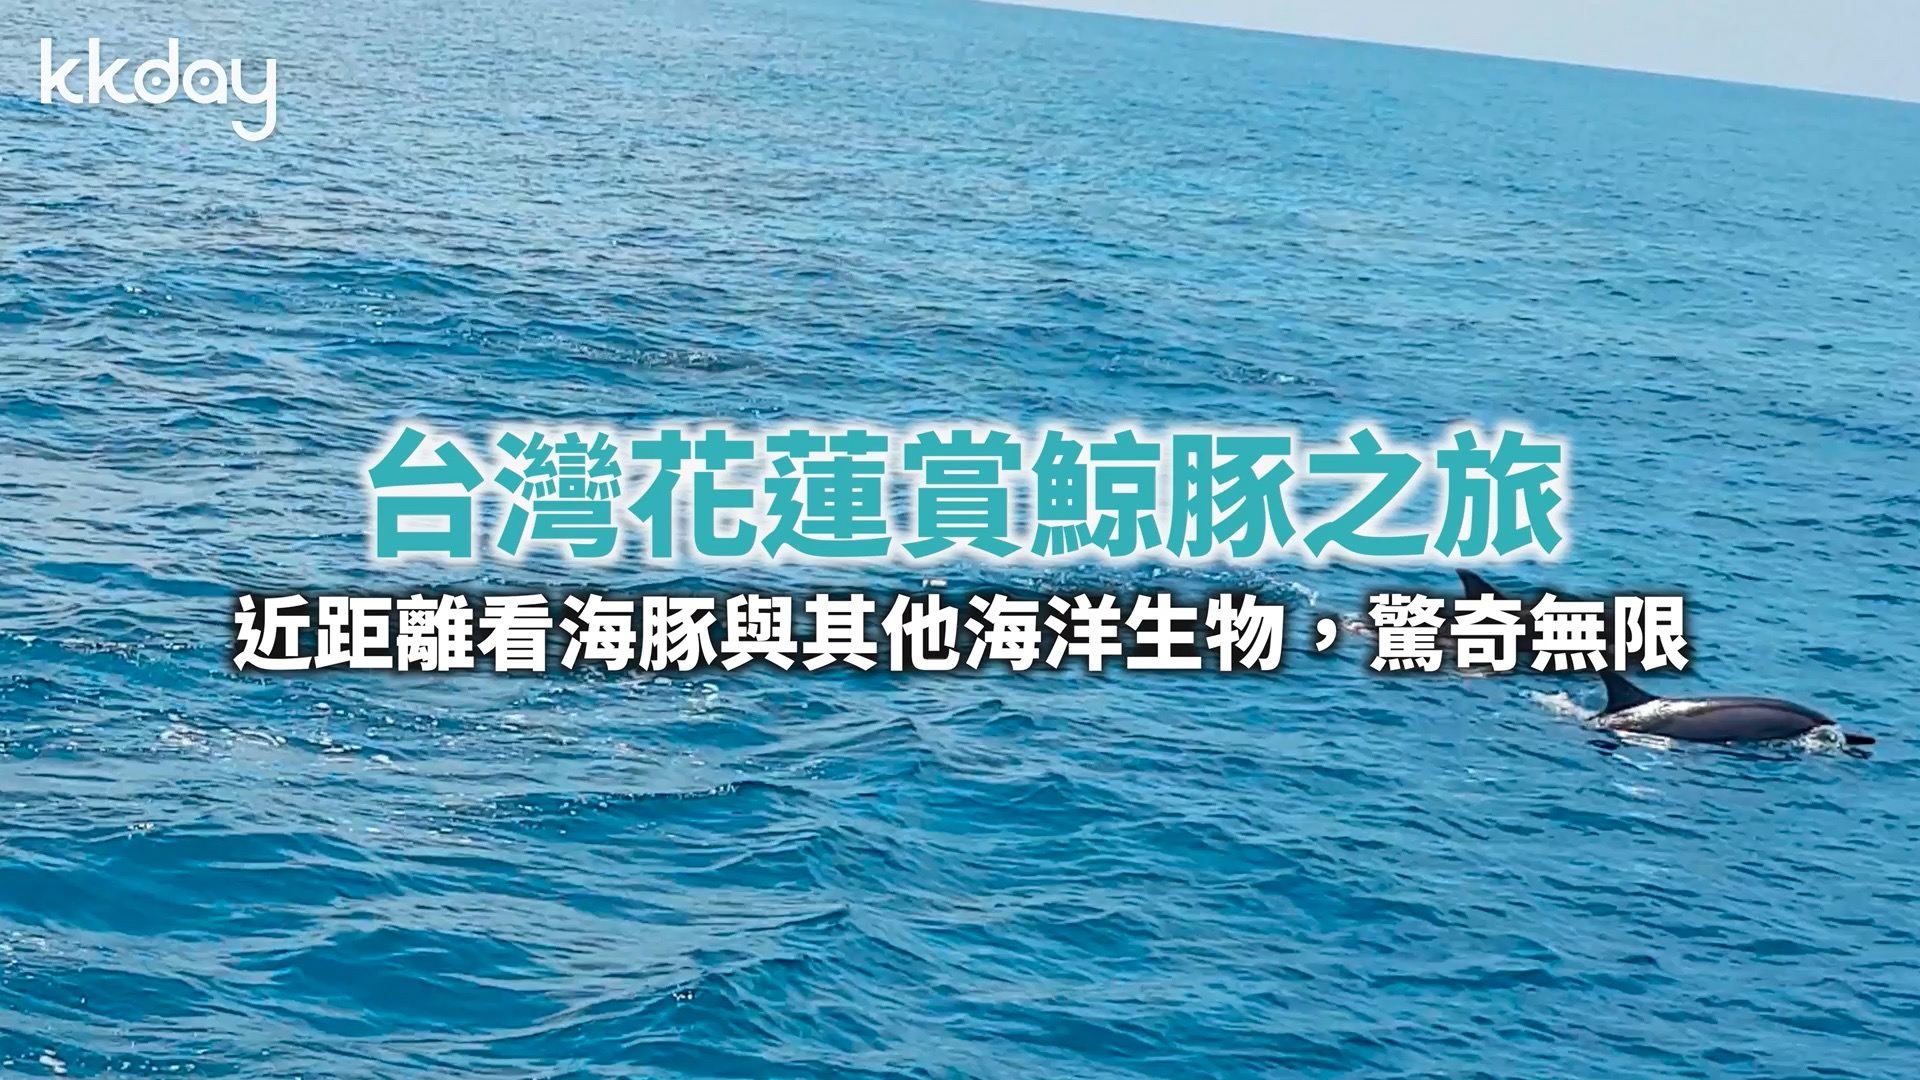 台湾花莲赏鲸之旅—近距离看海豚与其他海洋生物，惊奇无限🐬  搭乘kkday的专车从花莲去区直达海边码